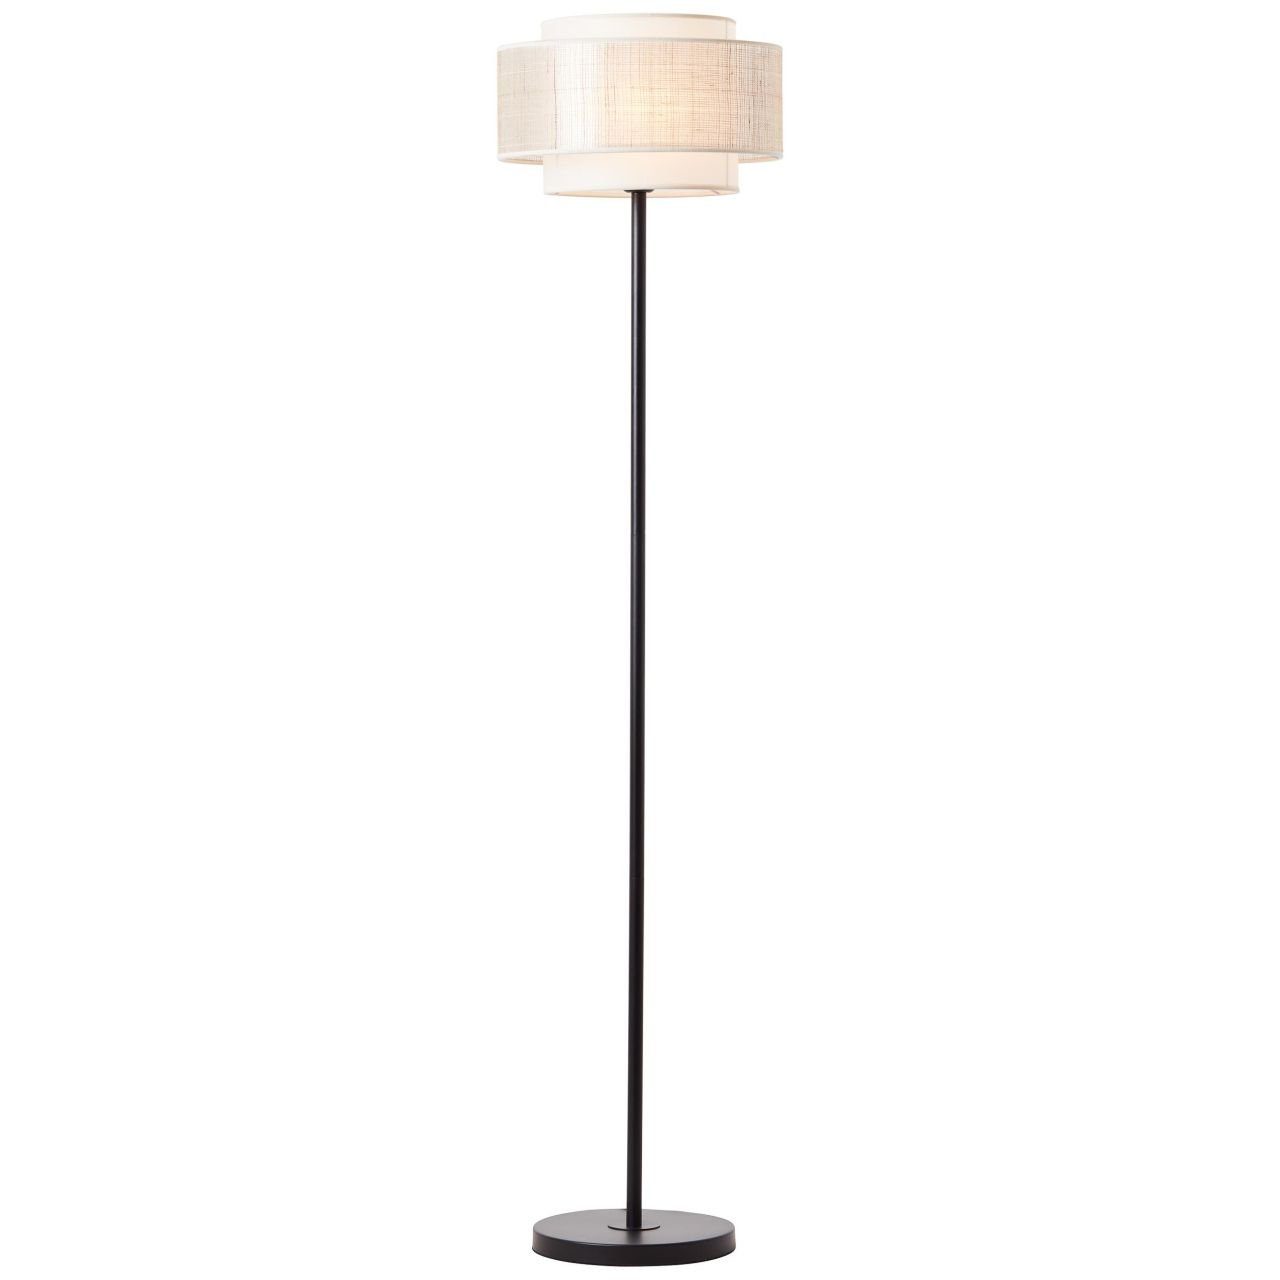 Standardmäßiges limitiertes Überseemodell! Brilliant Stehlampe Odar, Lampe, Odar schwarz/beige, E27, 42W, Standleuchte Fuß 1flg 1x Mit A60